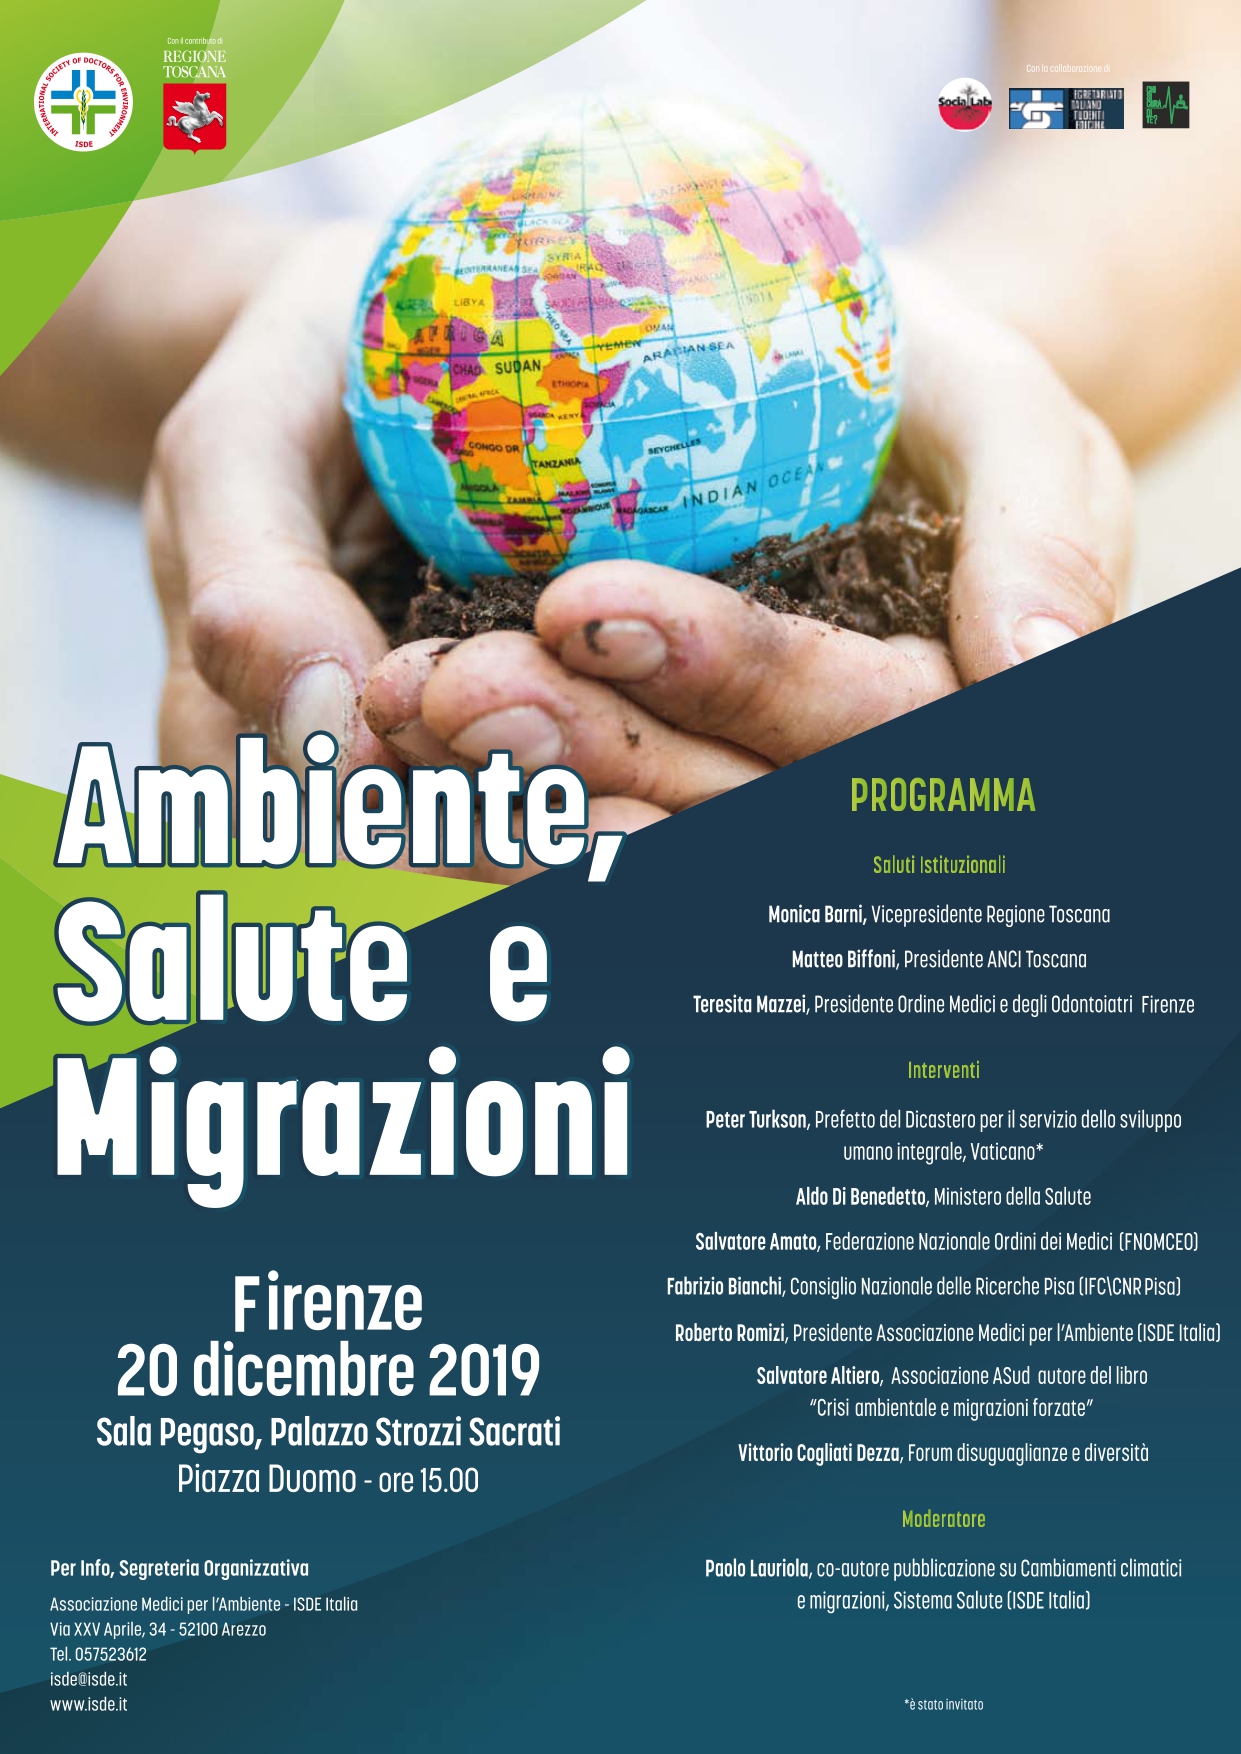 Clima, salute e migrazioni, venerdì incontro promosso da Medici per l’ambiente e Regione Toscana